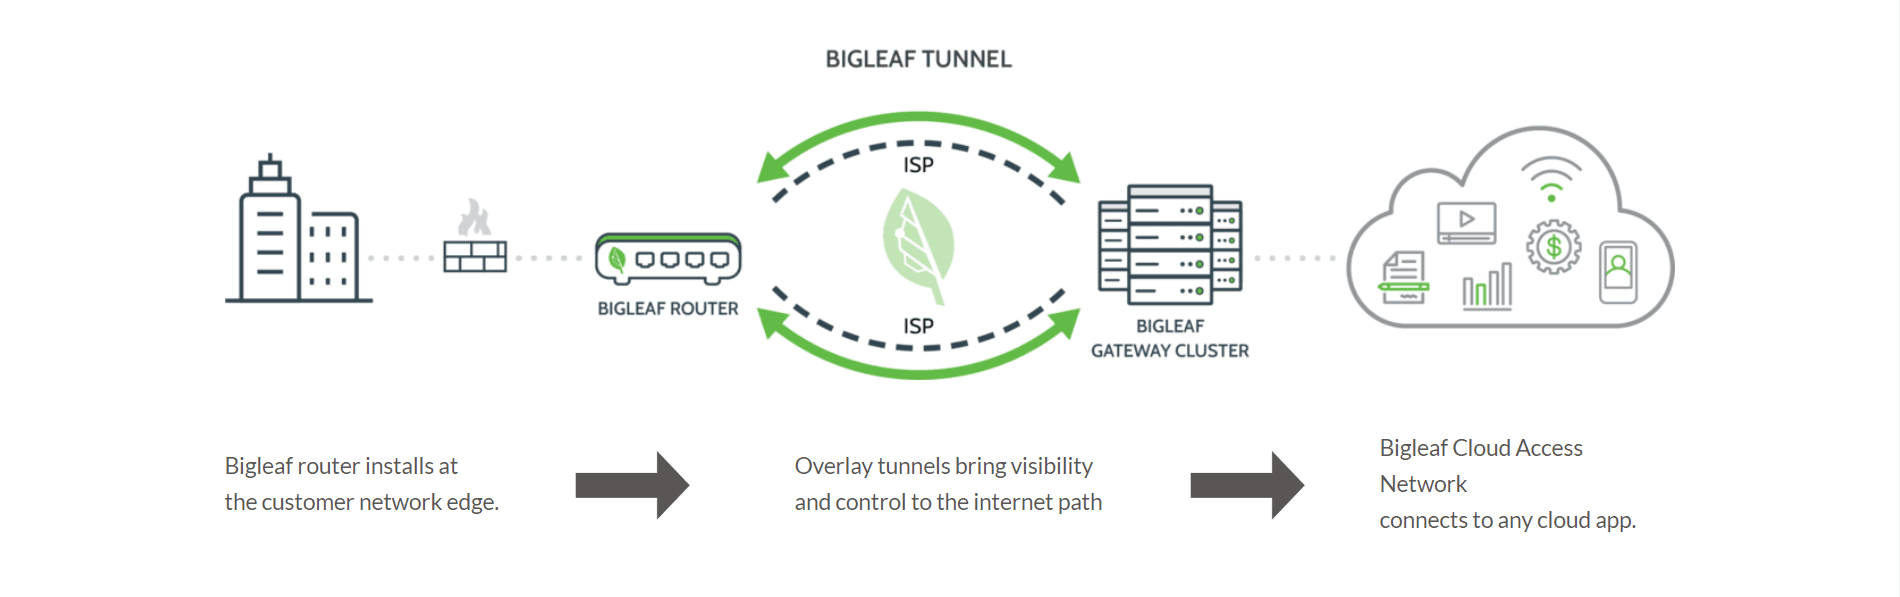 A diagram of the big leaf tunnel